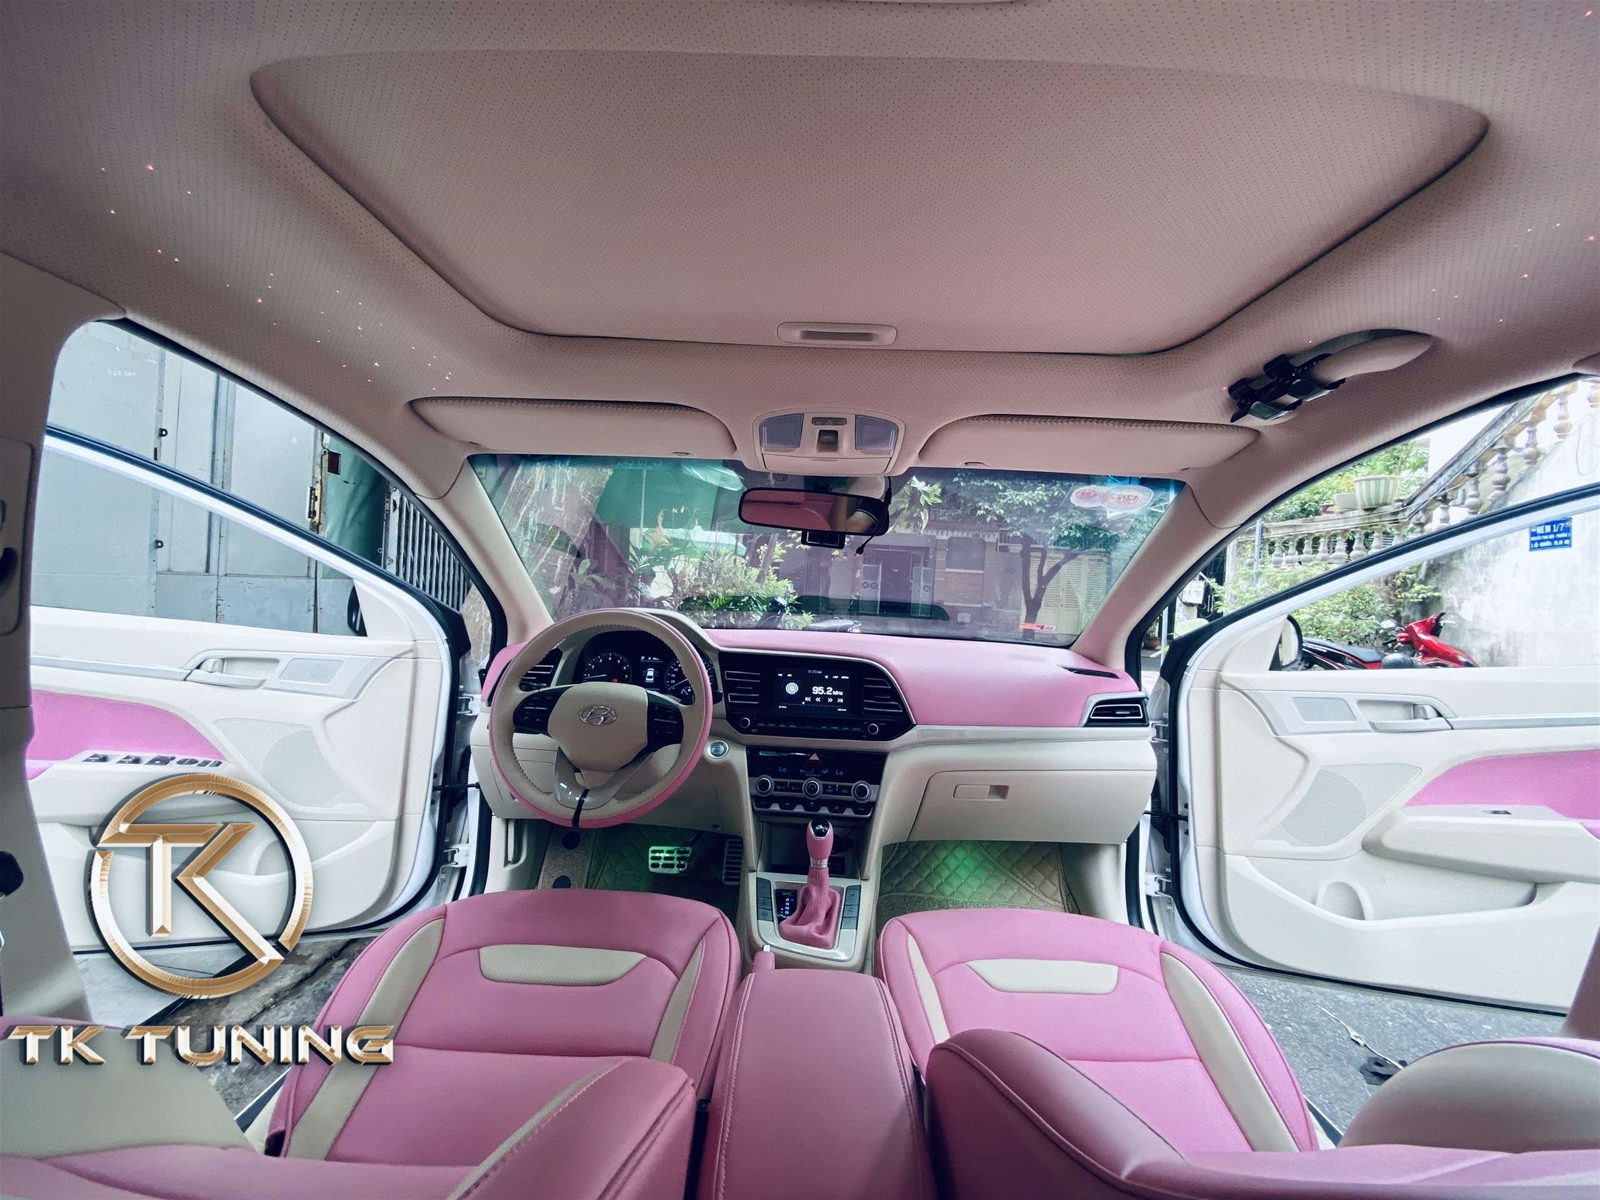 đổi màu nội thất cho xe hyundai elantra Tại Quận Gò Vấp